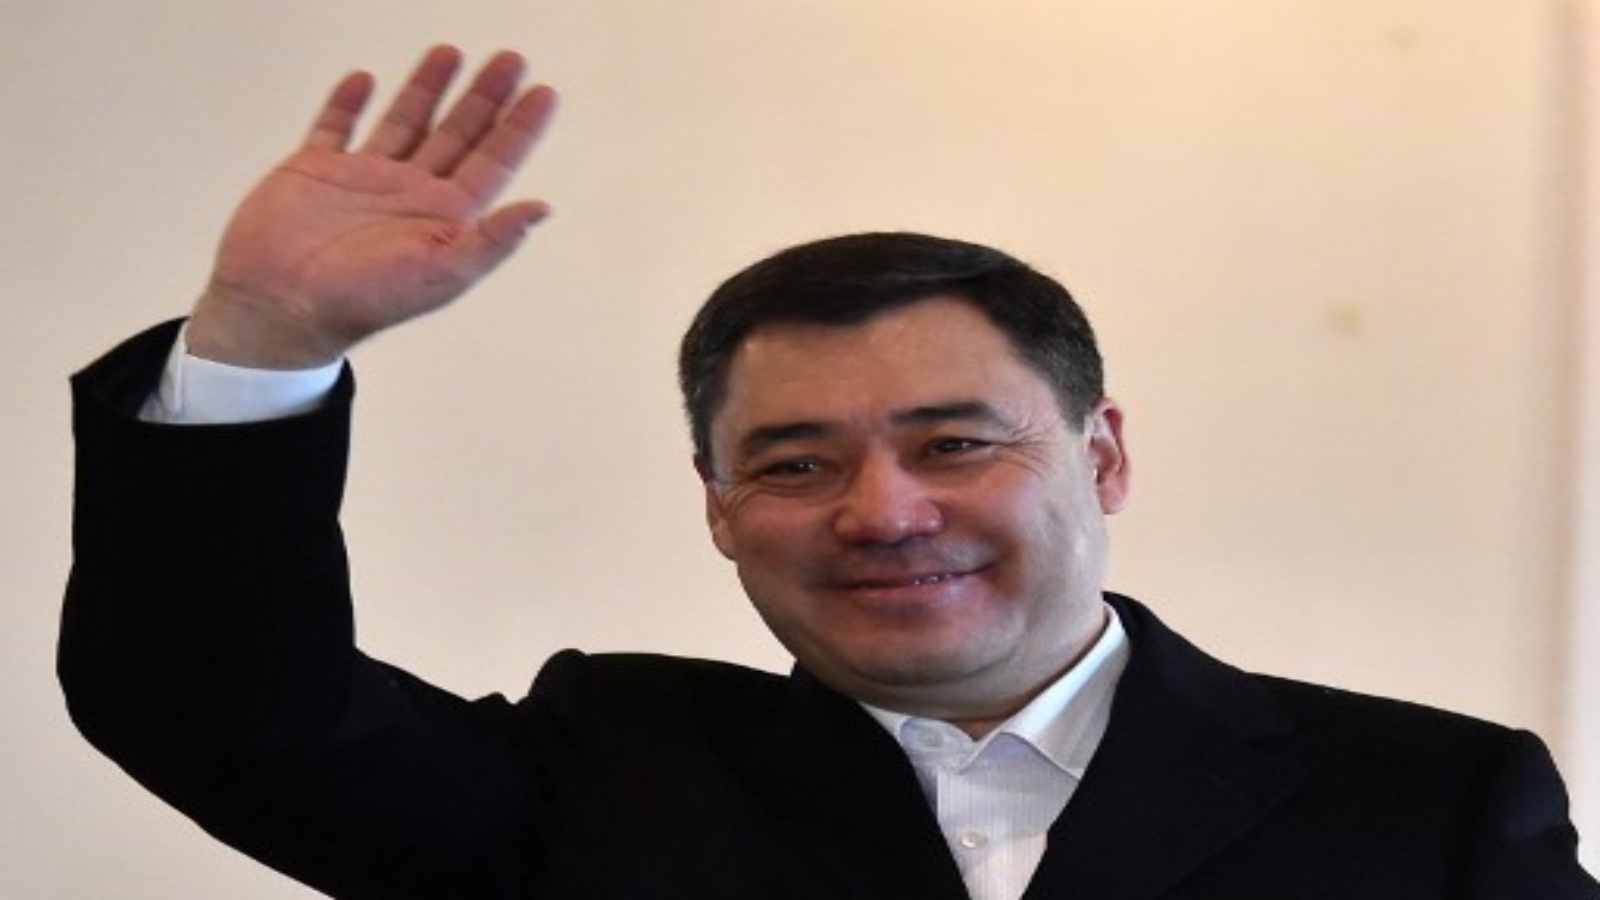 المرشح الرئاسي القرغيزي صدر جاباروف وهو يدلي بصوته خلال الانتخابات الرئاسية في قيرغيزستان والاستفتاء على نظام الحكومة في بيشكيك في 10 يناير 2021.